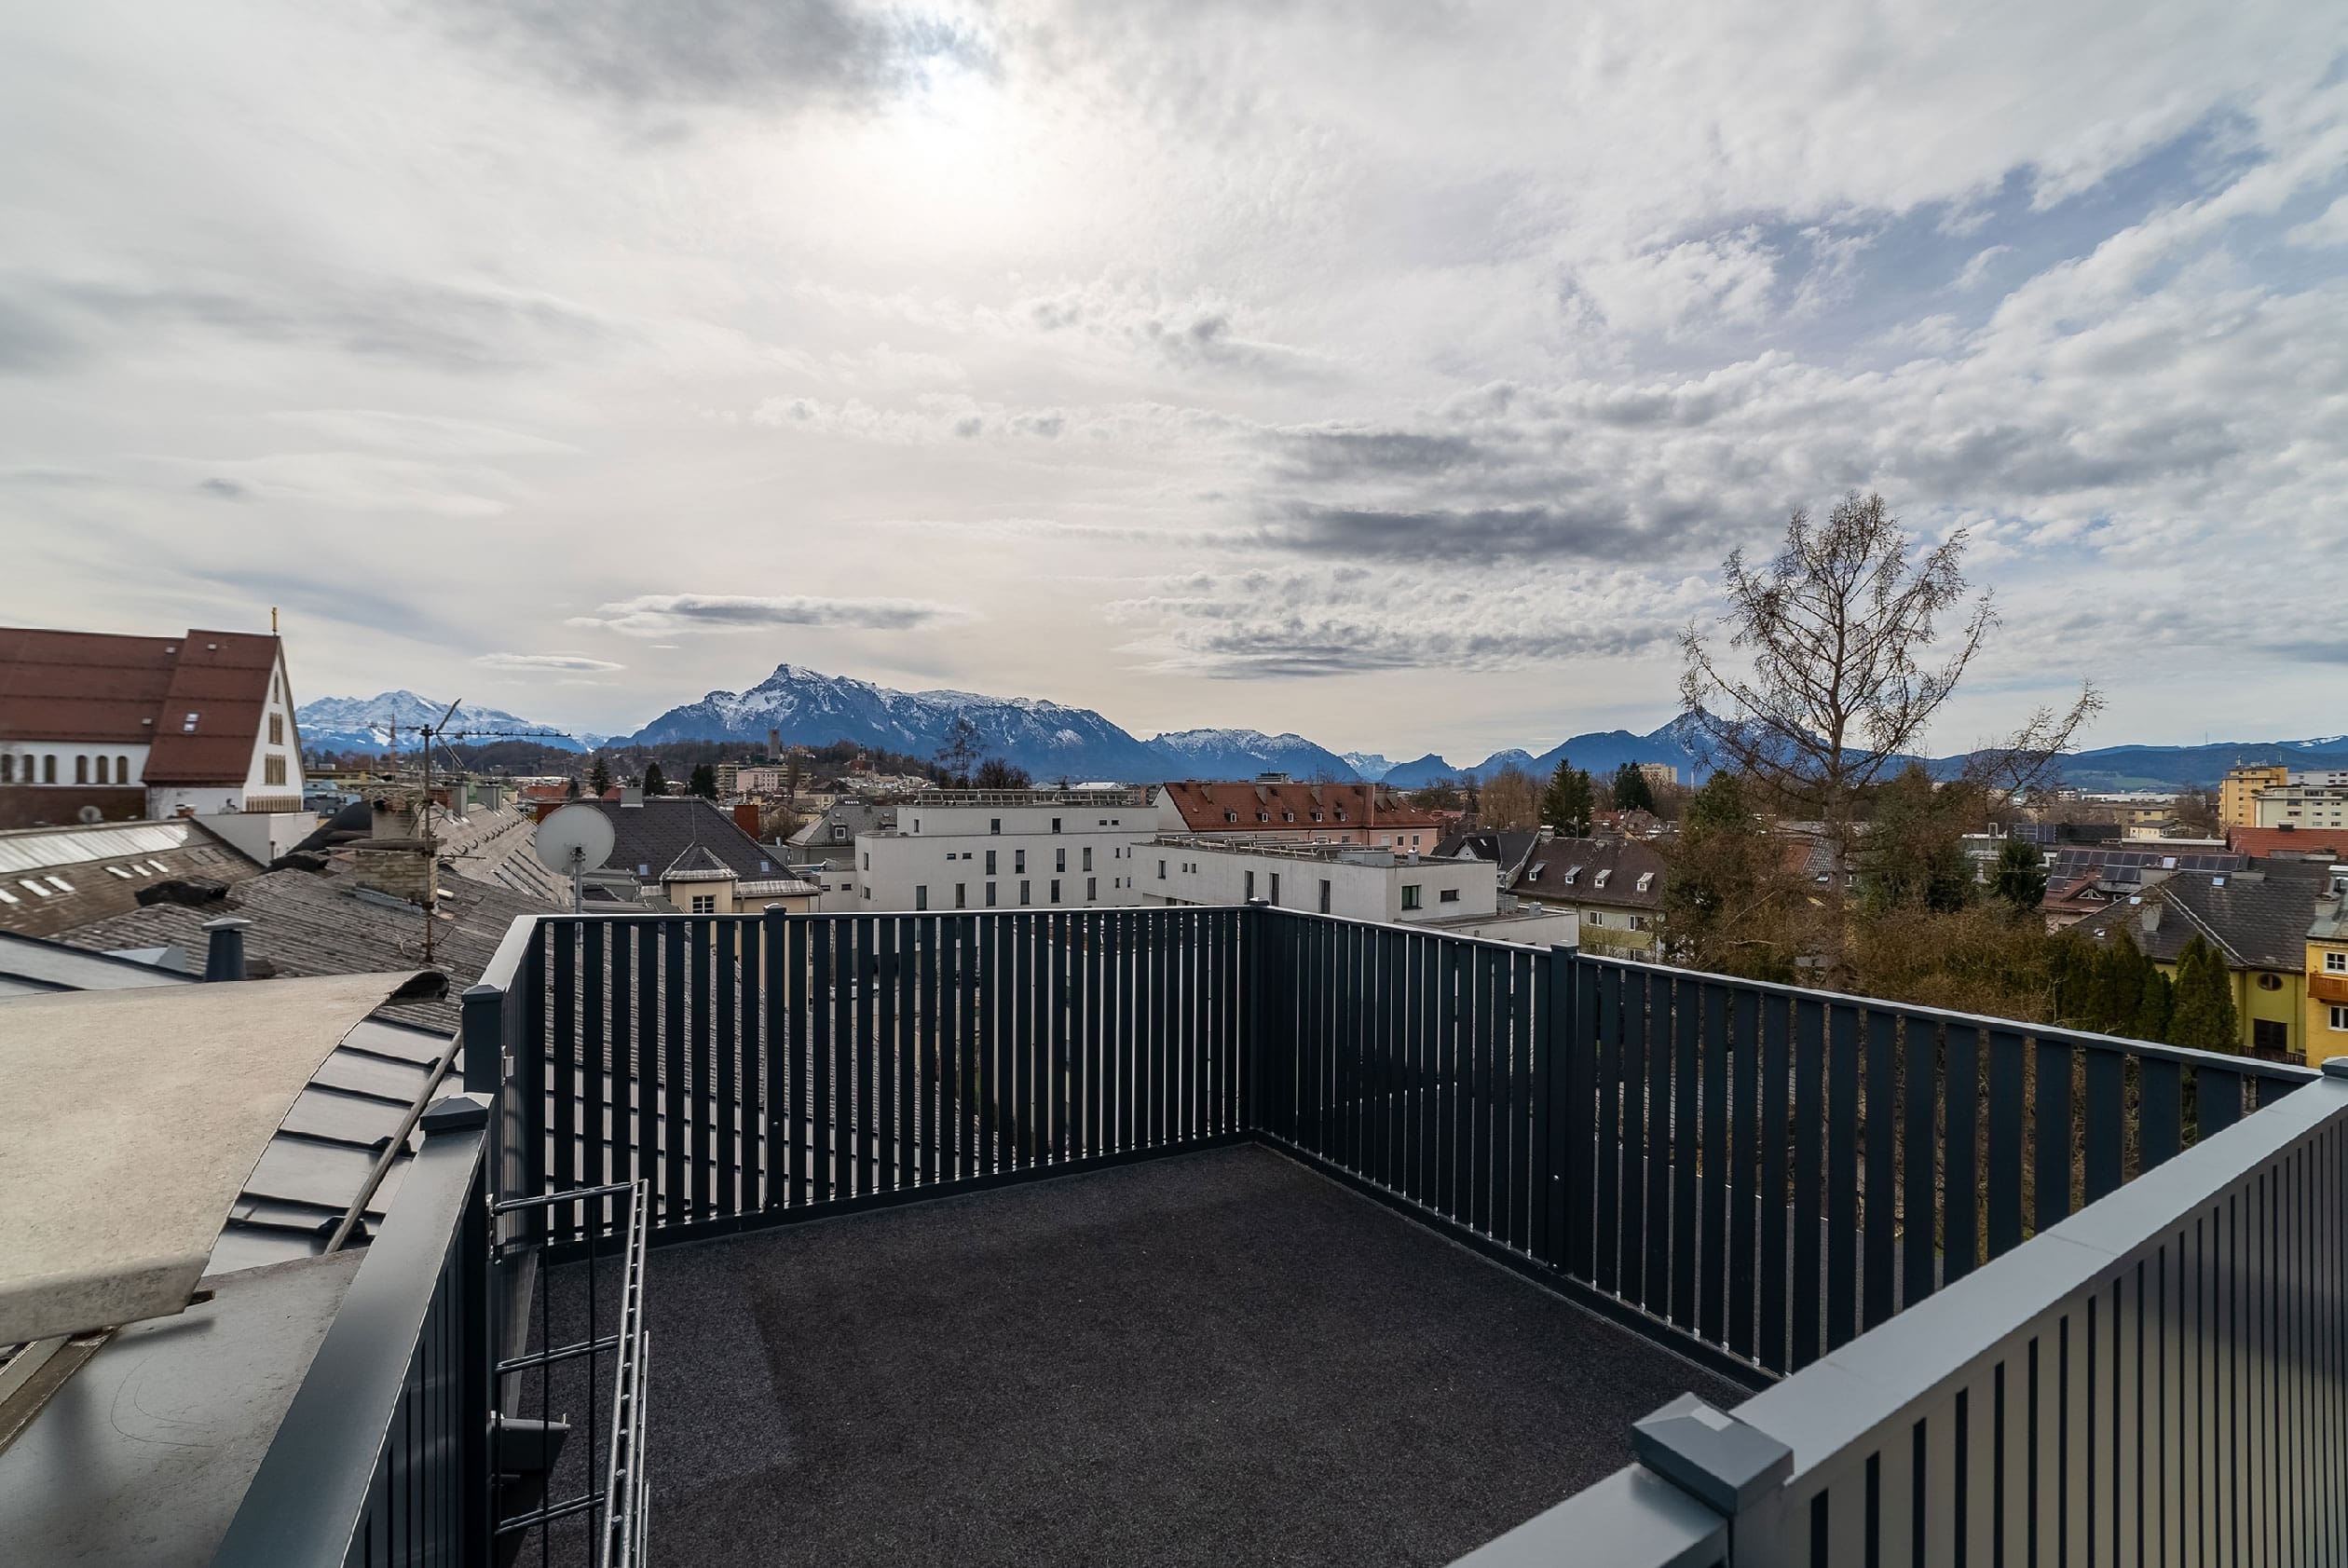 Das Dachgeschoss "360°" - auf einer Ebene mit einer Wohnnutzfläche von über 119 m² - verspricht durch sein Ambiente wohligste Momente: Von der Dachterrasse den Blick in die Ferne schweifen lassen, den Sonnenuntergang genießen, sich auf einem der 2 Balkone bei einer gemütlichen Tasse Tee am Ausblick erfreuen. Hier ist man "rundum" und in allen Richtungen mit grandioser Aussicht versorgt.